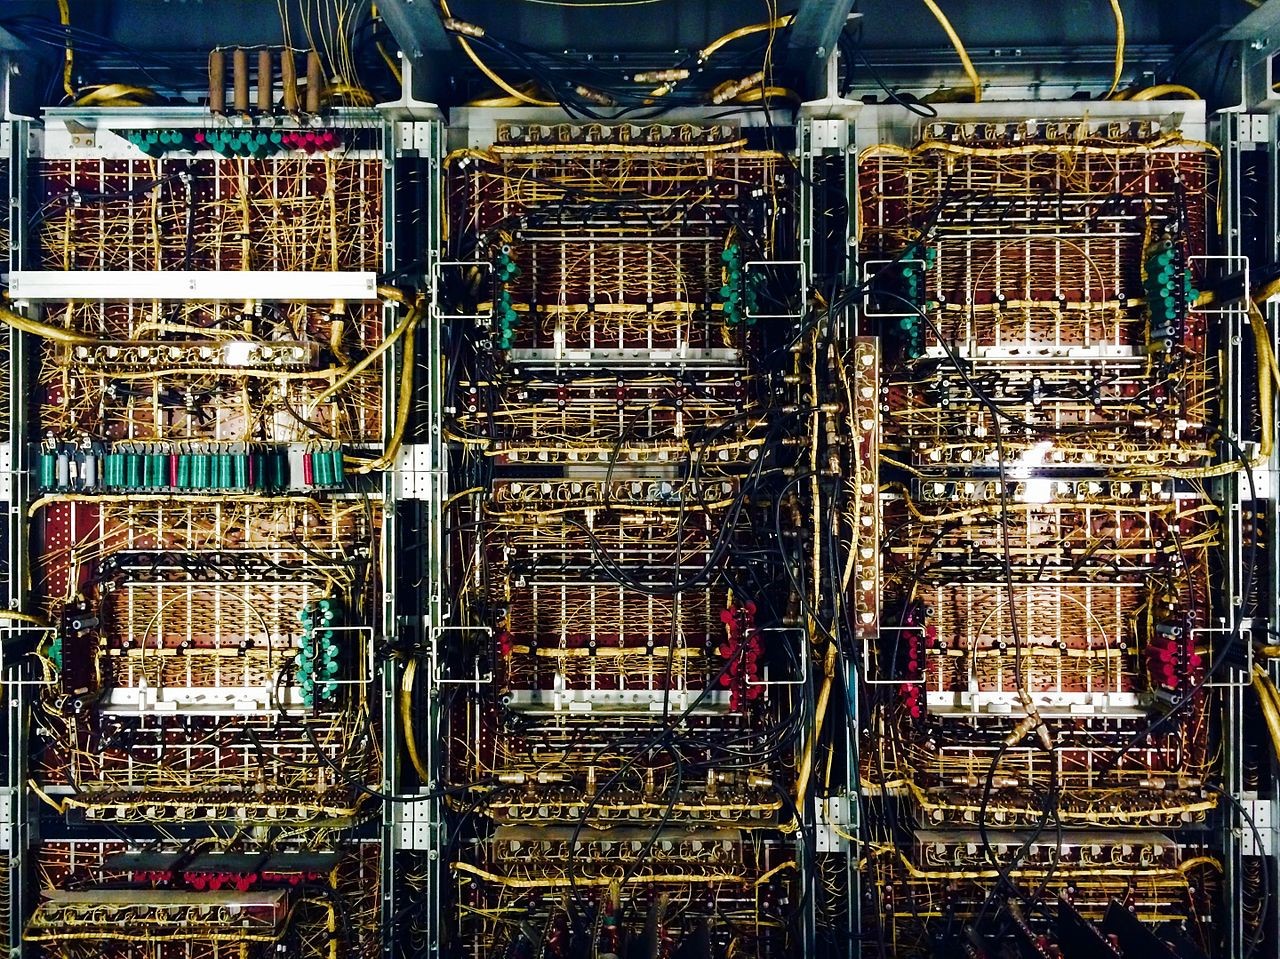 Внутри шкафов компьютера UNIVAC I (1951 год) — никаких печатных плат, только навесной монтаж. Хотя перед нами первый американский компьютер, созданный не под конкретную задачу или в исследовательских целях, а для продажи (правда, пока лишь государственным заказчикам). Коммерчески успешные массовые устройства с использованием печатных плат начнут появляться только в середине 1950-х. Одними из первых станут радиоприемники Motorola PLAcir. Однако до открытой публикации описания метода пайки погружением (Auto-Sembly) в 1956 году широкого распространения печатные платы не получат / ©Alejandro Quintanar, Wikimedia 